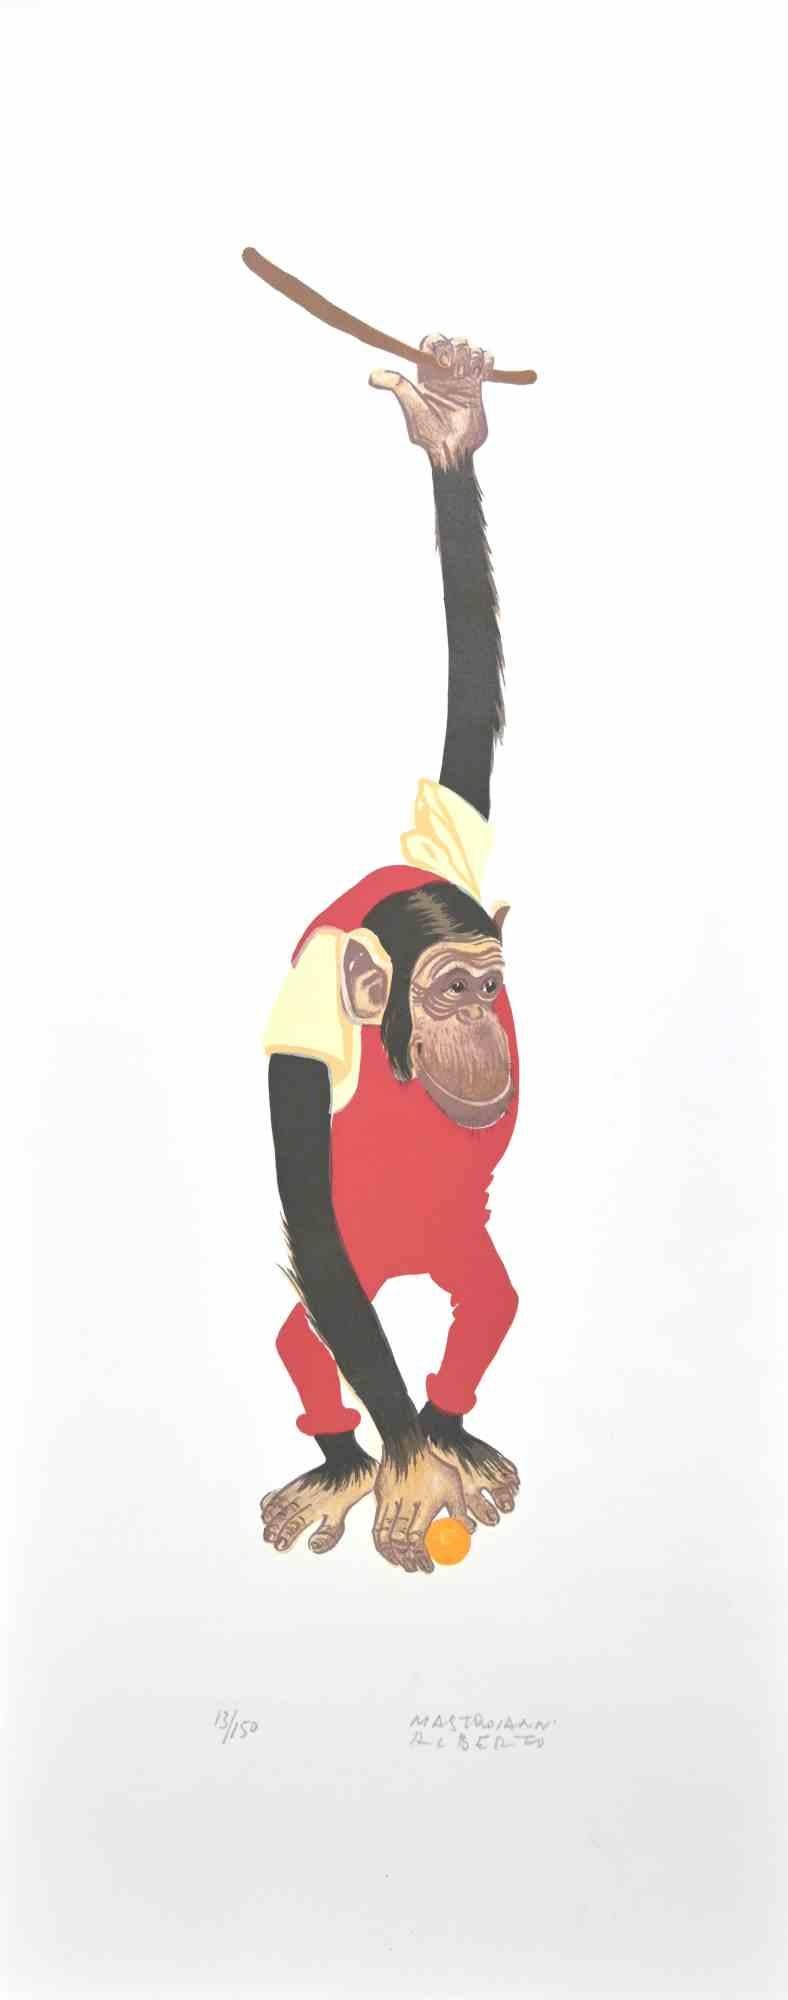 Monkey - Lithograph by Alberto Mastroianni - 1970s